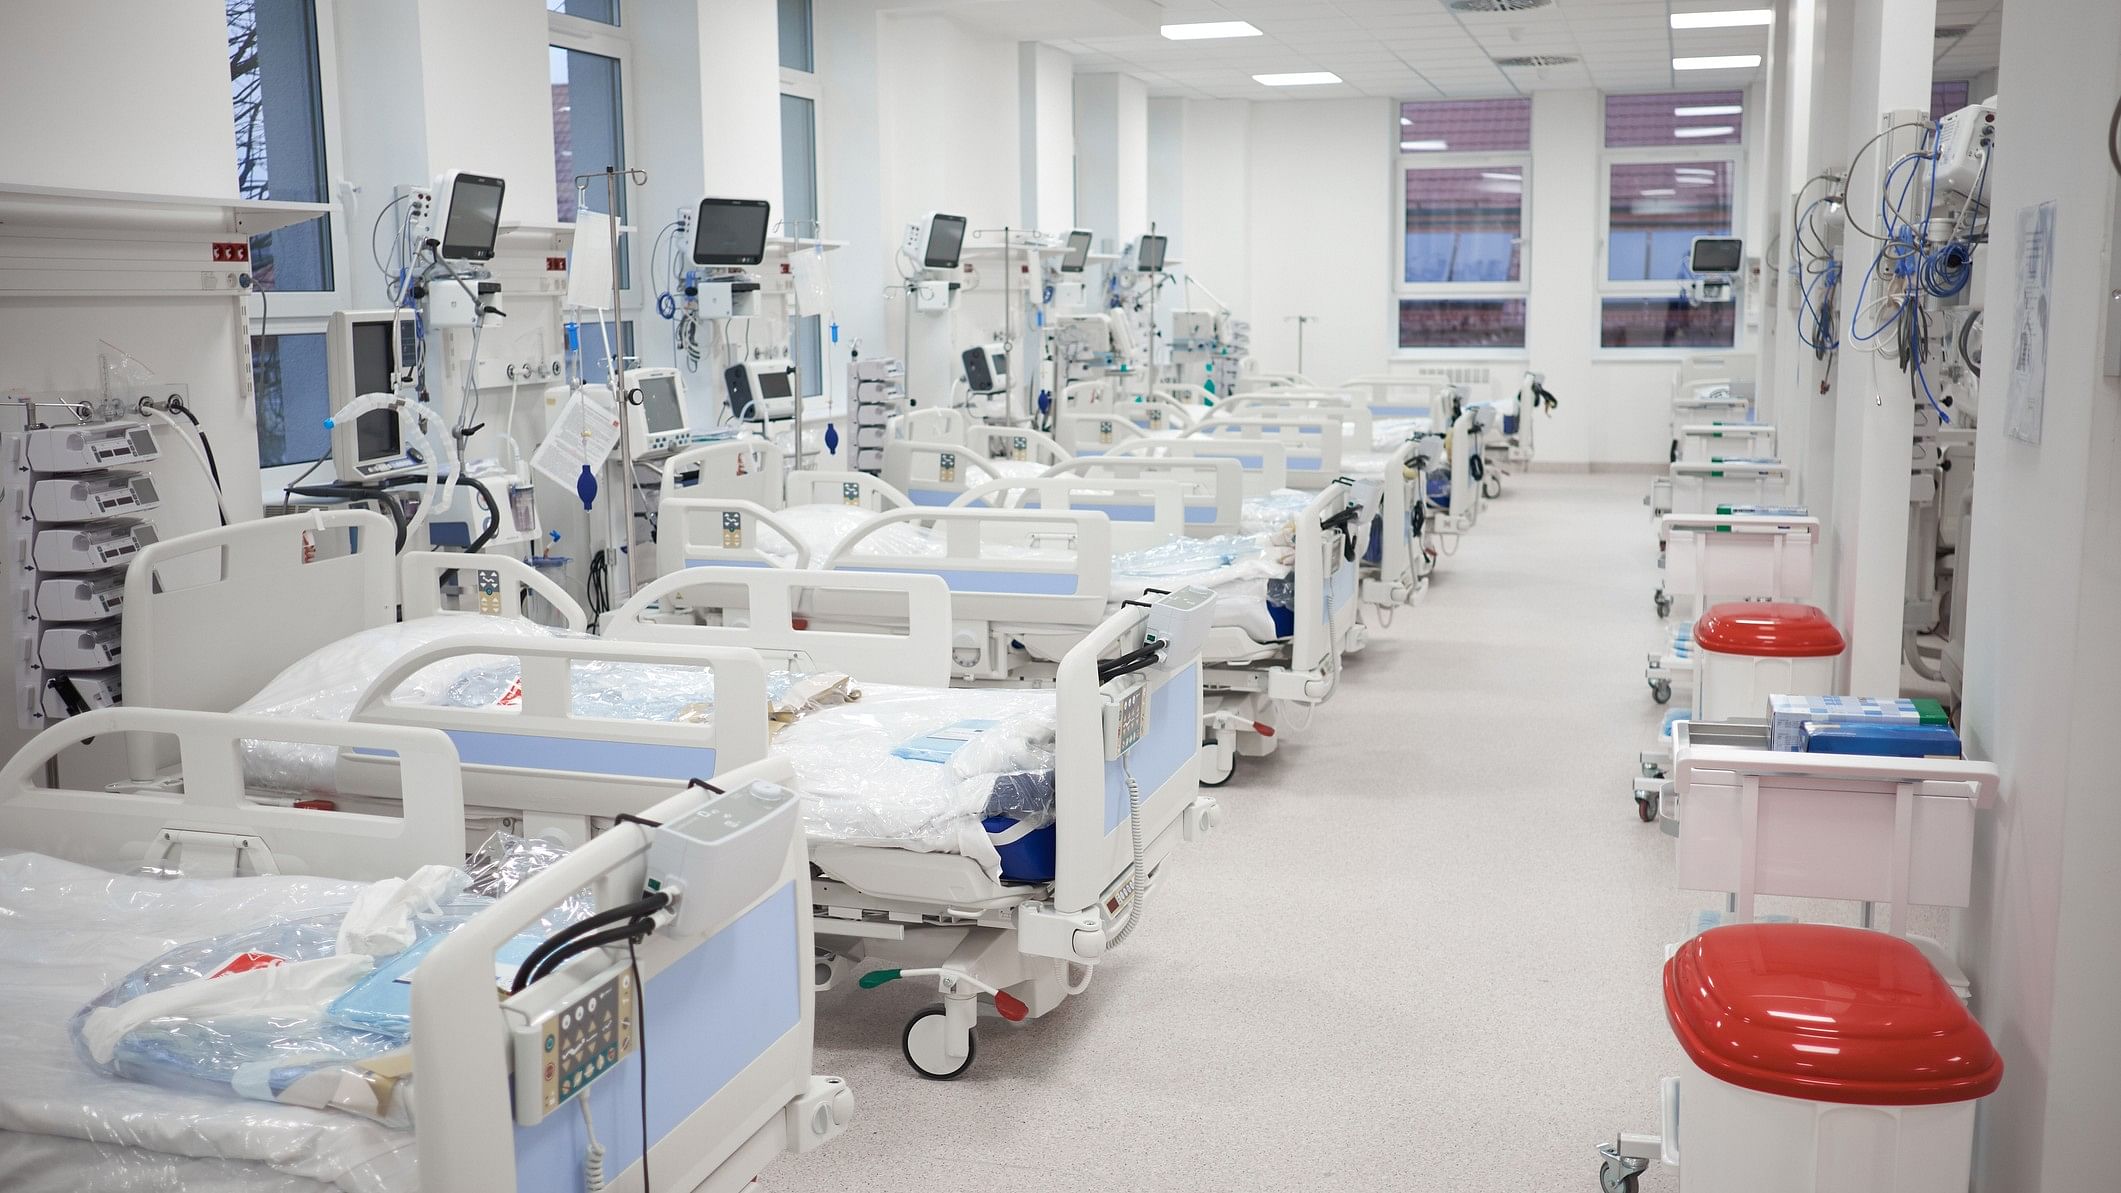 <div class="paragraphs"><p>representative image showing hospital beds.</p></div>